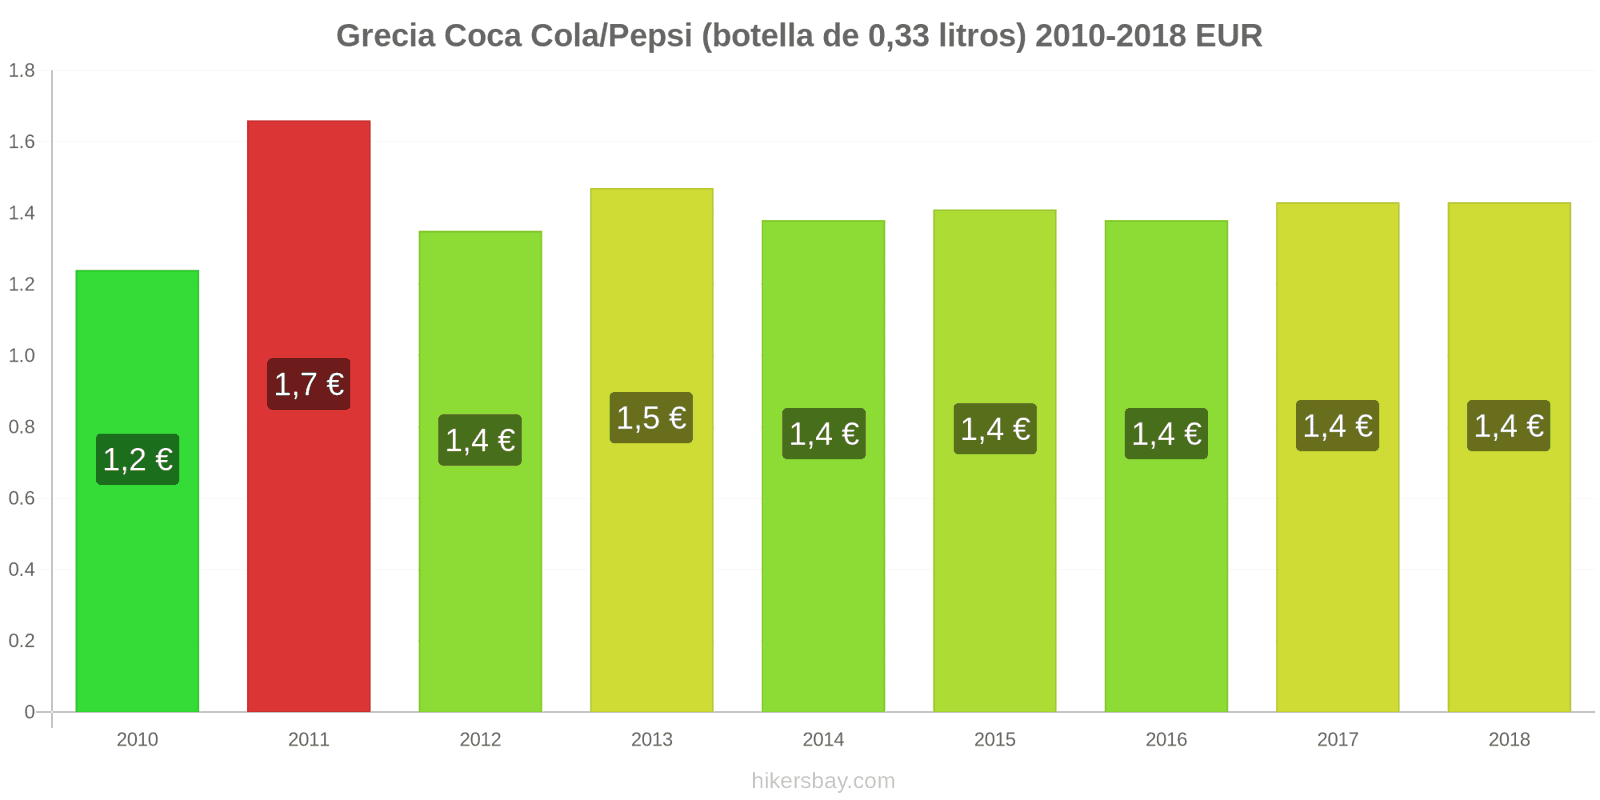 Grecia cambios de precios Coca-Cola/Pepsi (botella de 0.33 litros) hikersbay.com